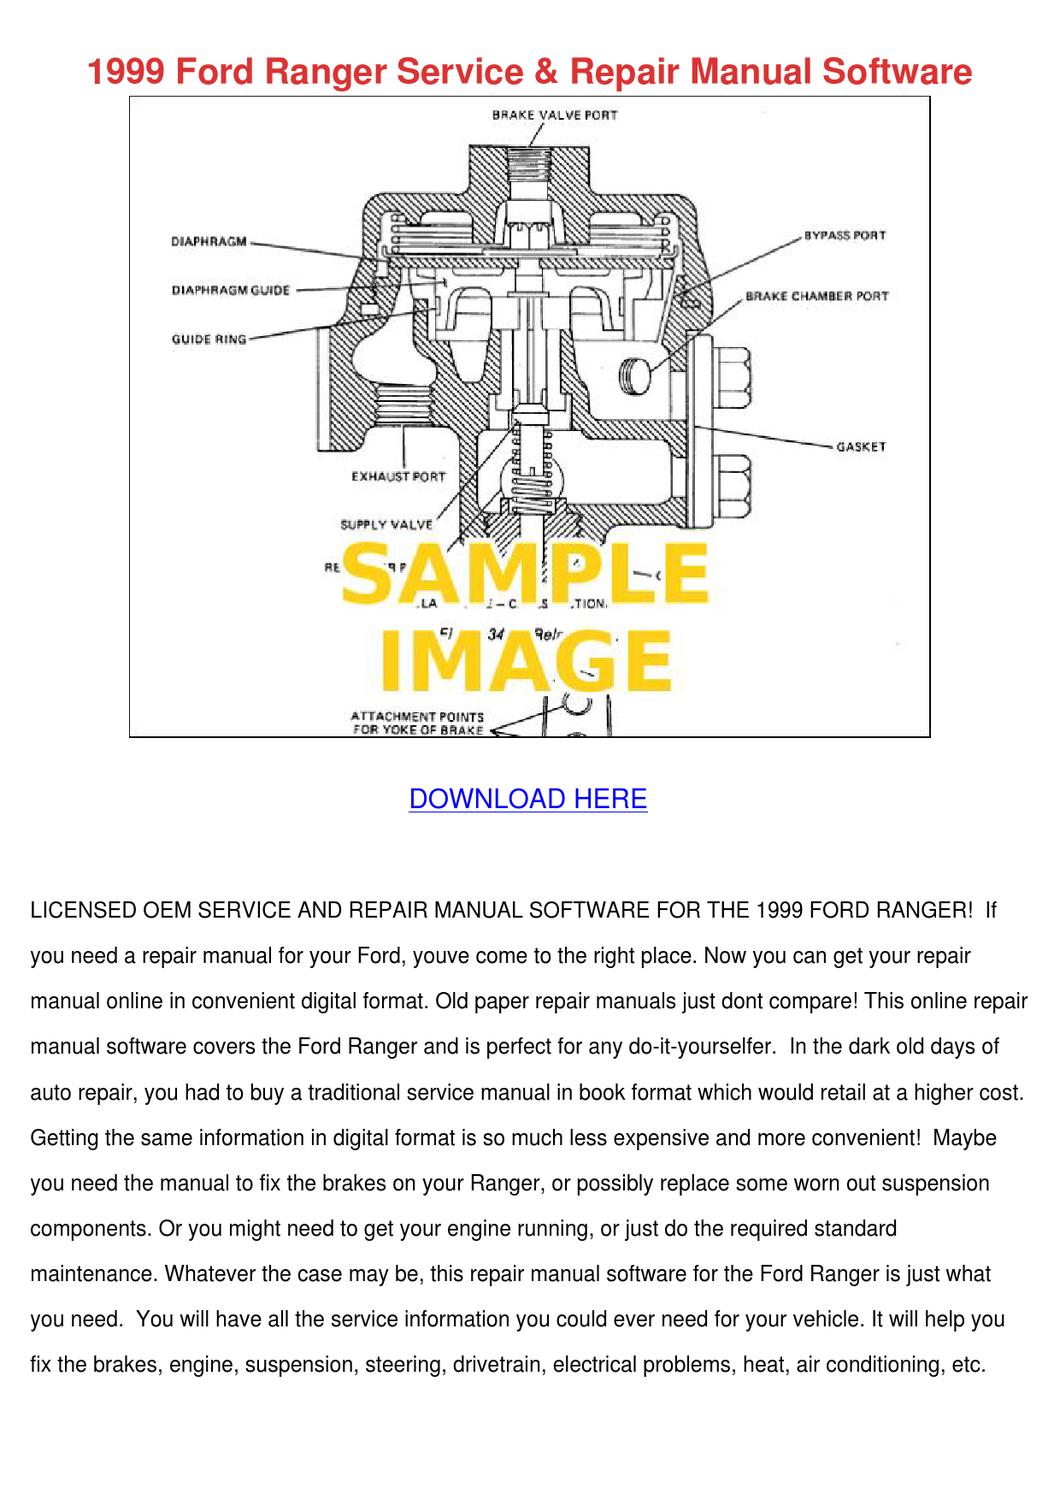 1999 Ford Ranger Repair Manual Download